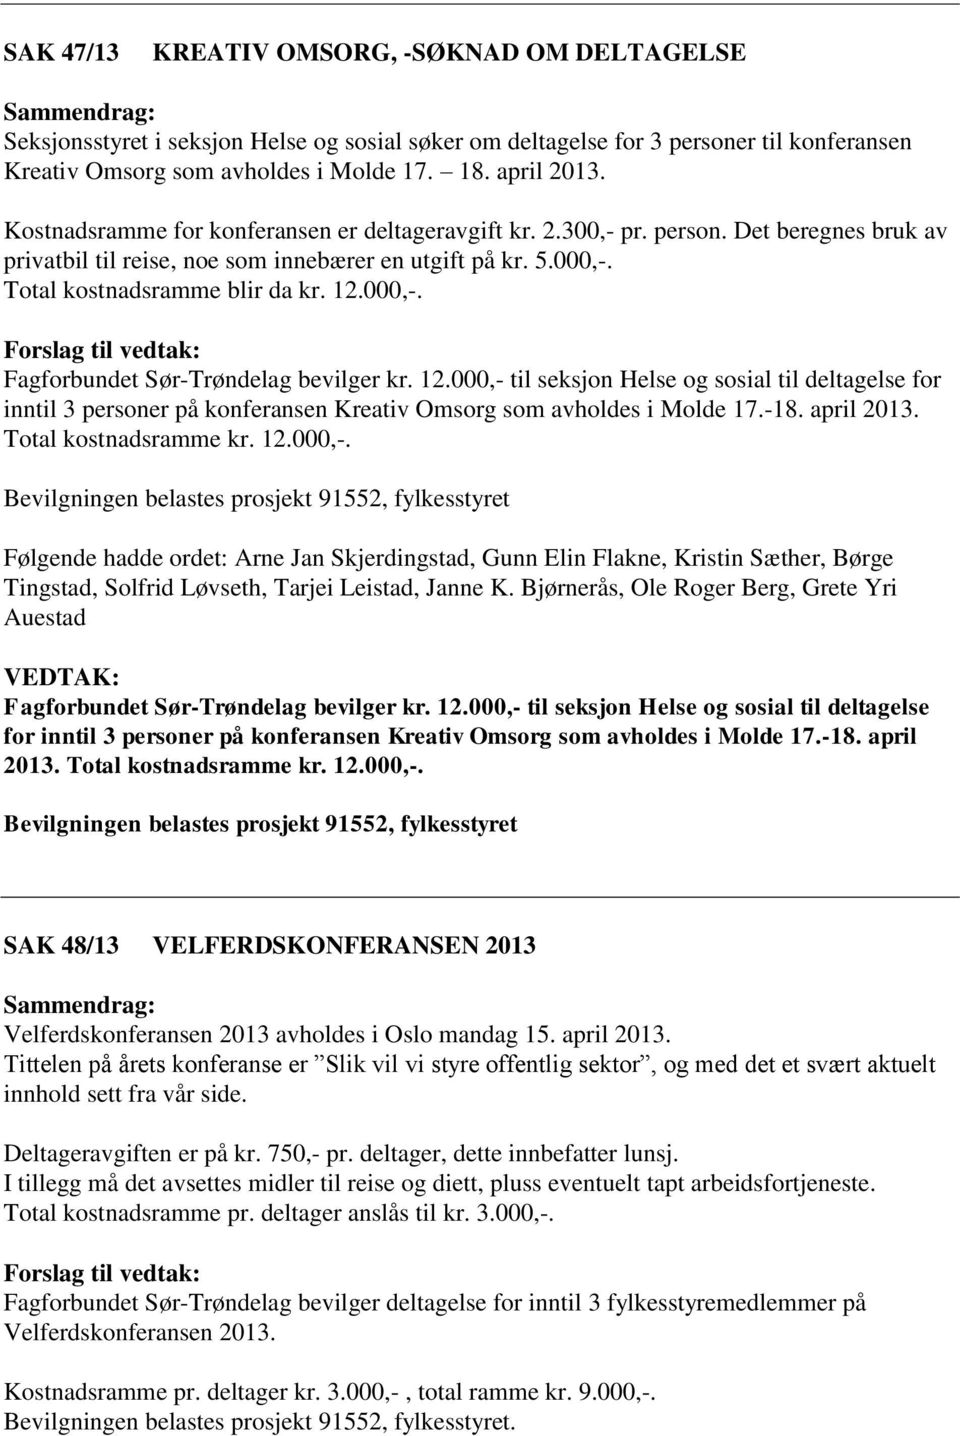 12.000,- til seksjon Helse og sosial til deltagelse for inntil 3 personer på konferansen Kreativ Omsorg som avholdes i Molde 17.-18. april 2013. Total kostnadsramme kr. 12.000,-. Bevilgningen belastes prosjekt 91552, fylkesstyret, Gunn Elin Flakne, Kristin Sæther, Børge Tingstad, Solfrid Løvseth, Tarjei Leistad, Janne K.